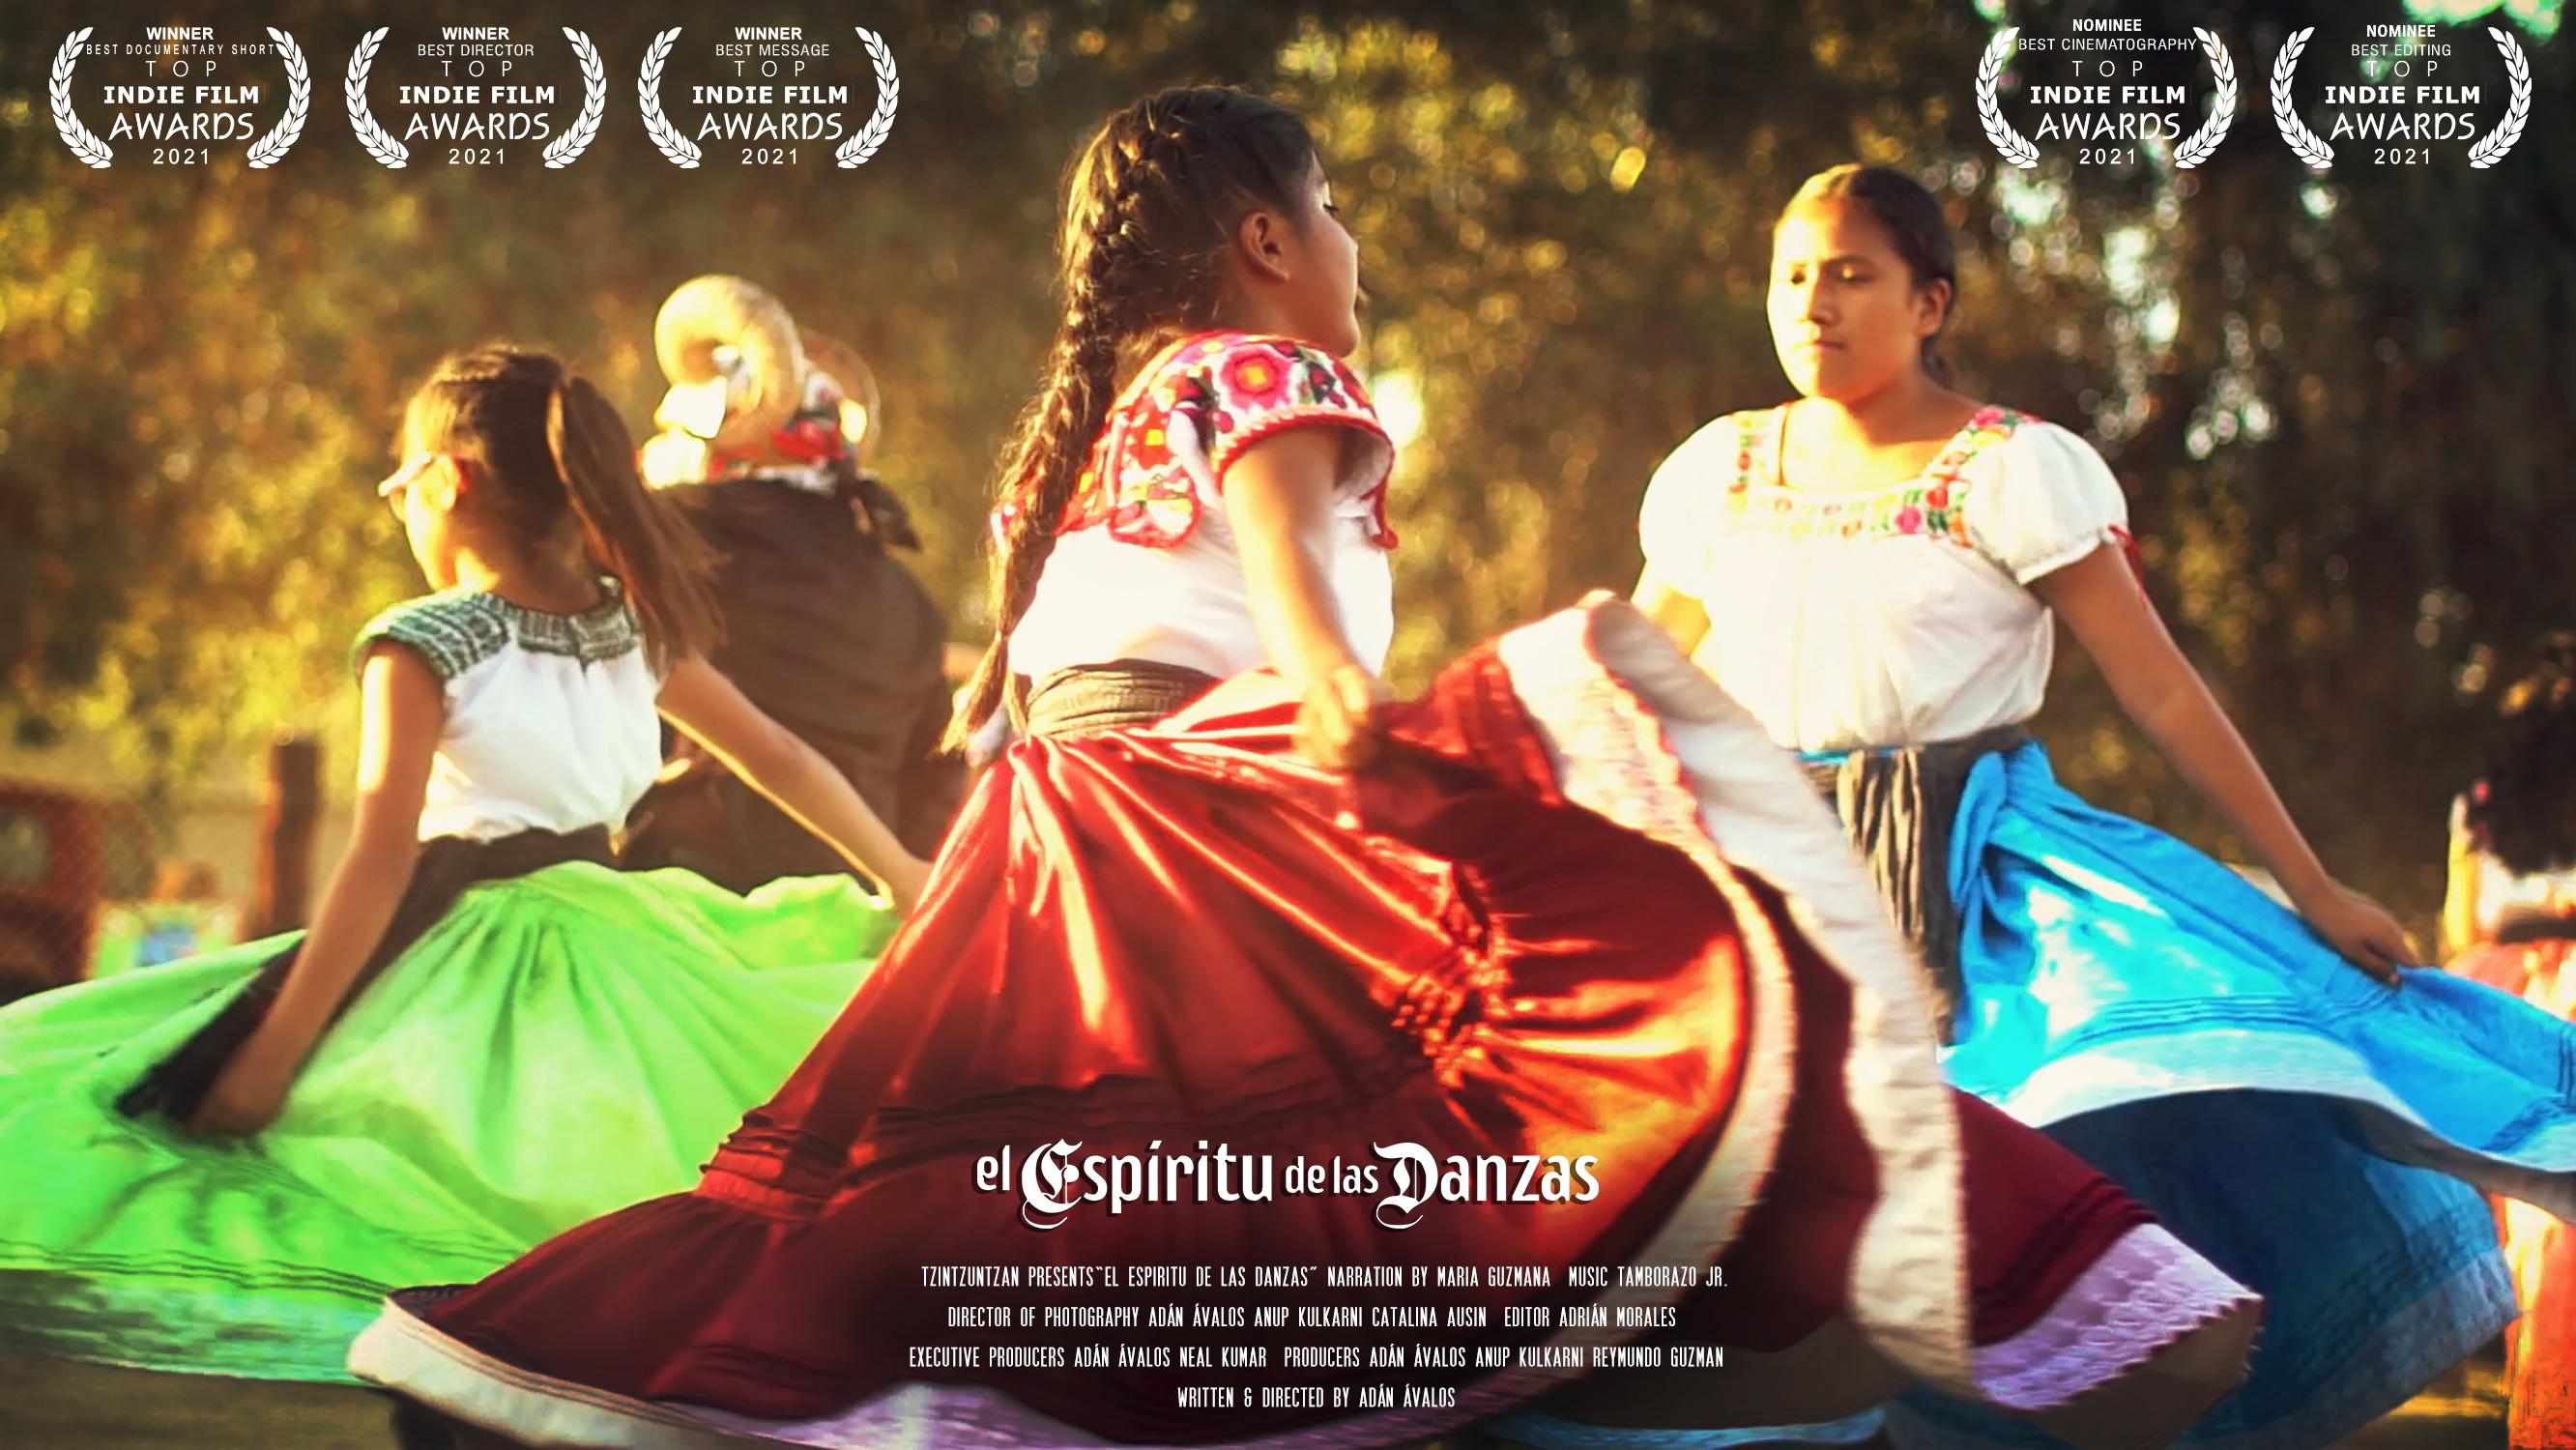 Смотреть El espíritu de las danzas (The spirit of dances) (2020) на шдрезка